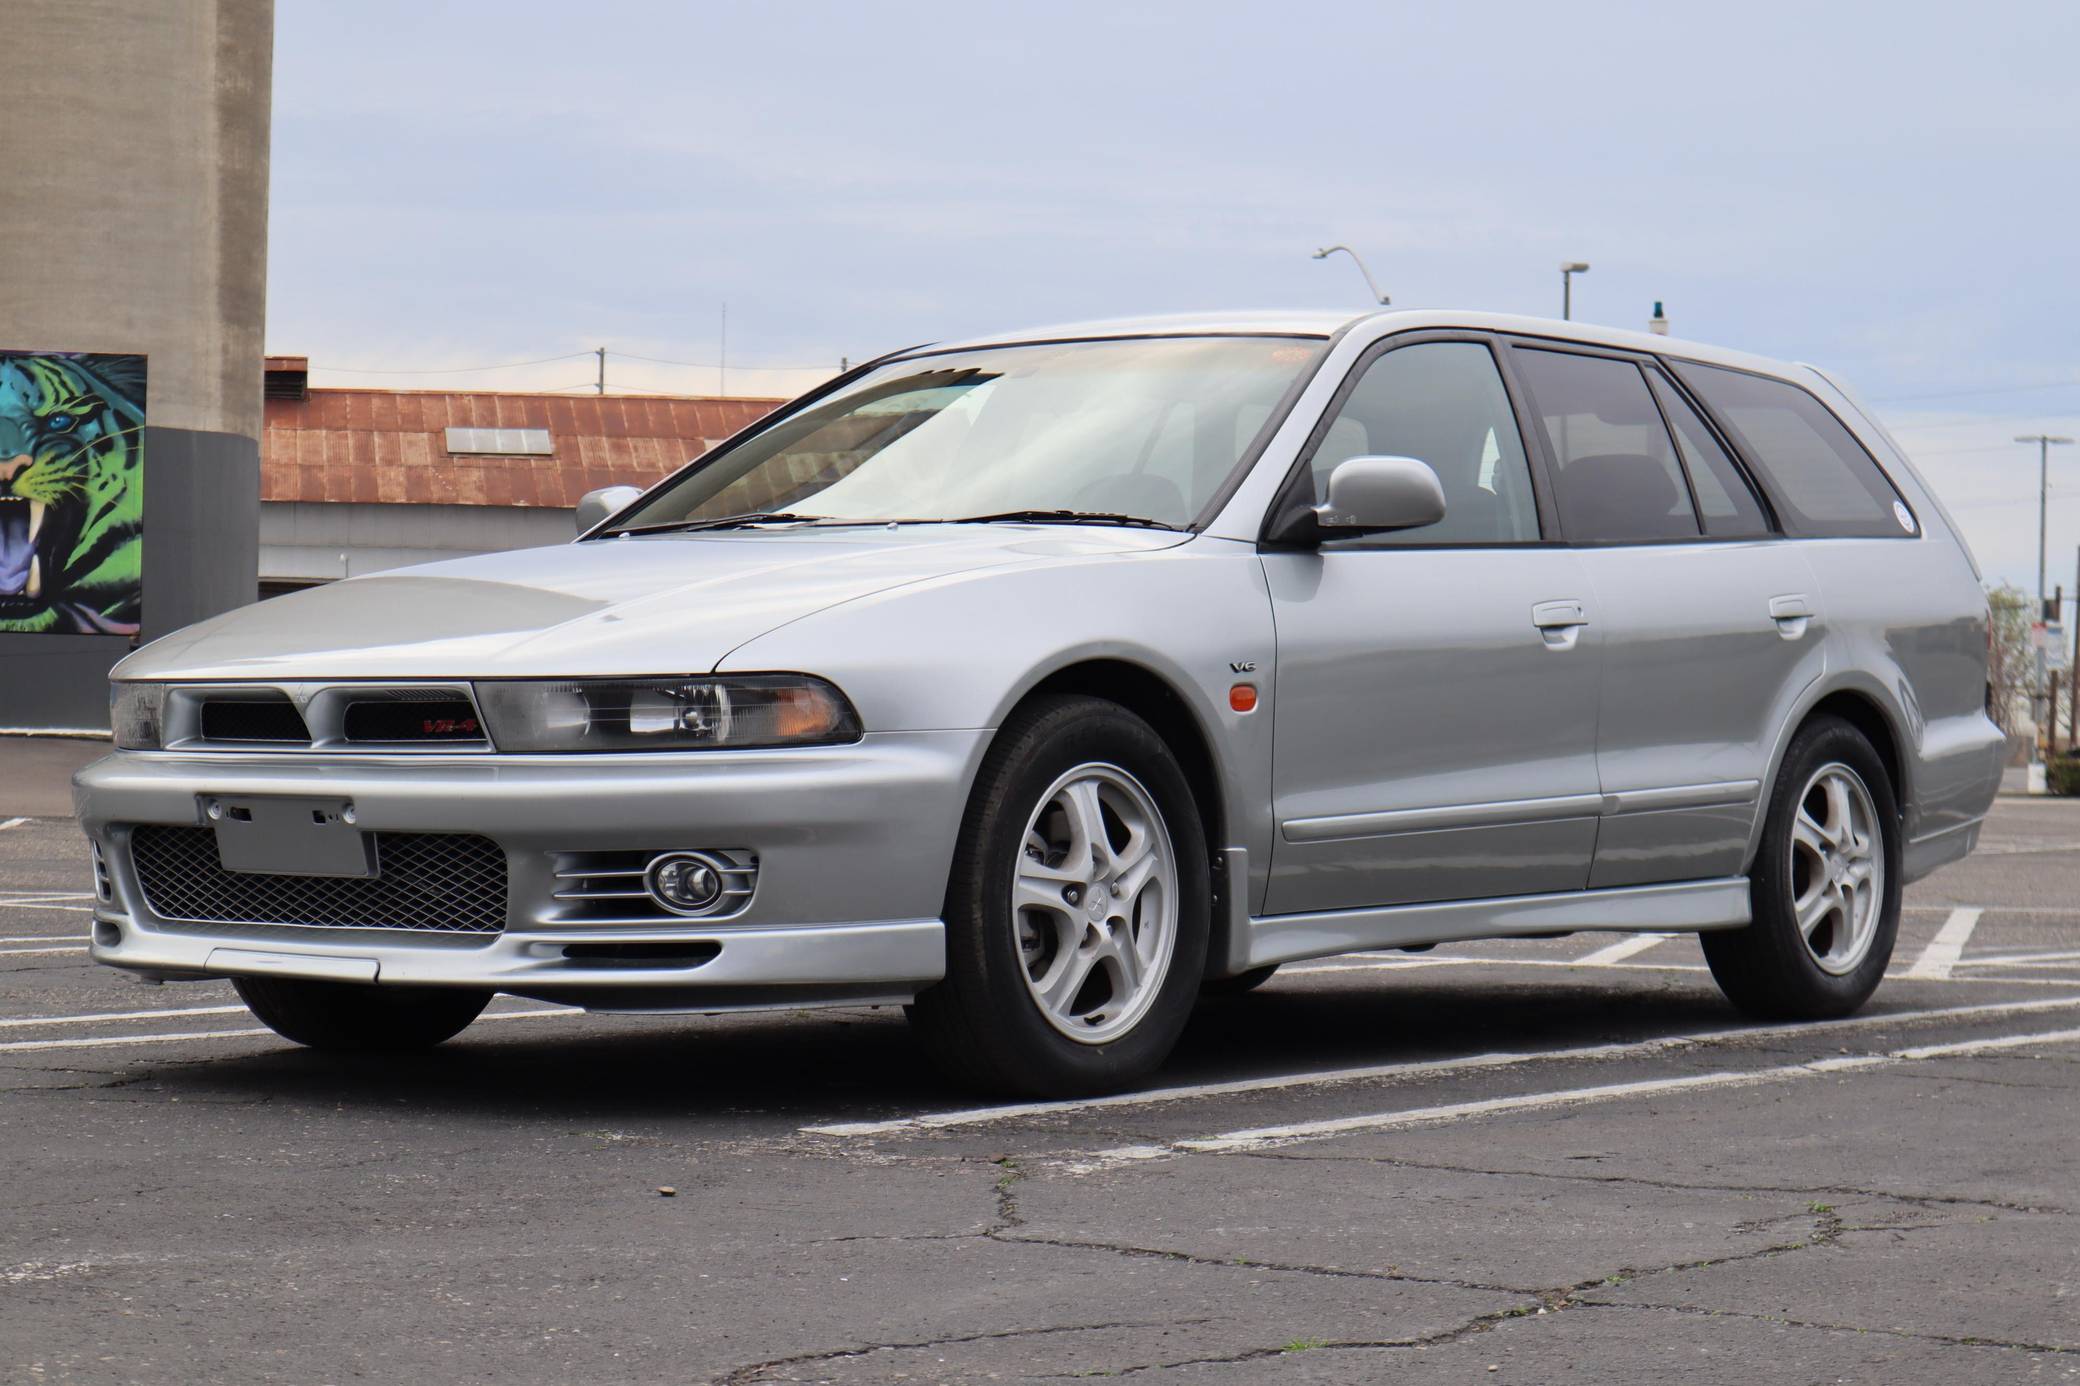 1996 Mitsubishi Legnum VR-4 for Sale - Cars & Bids